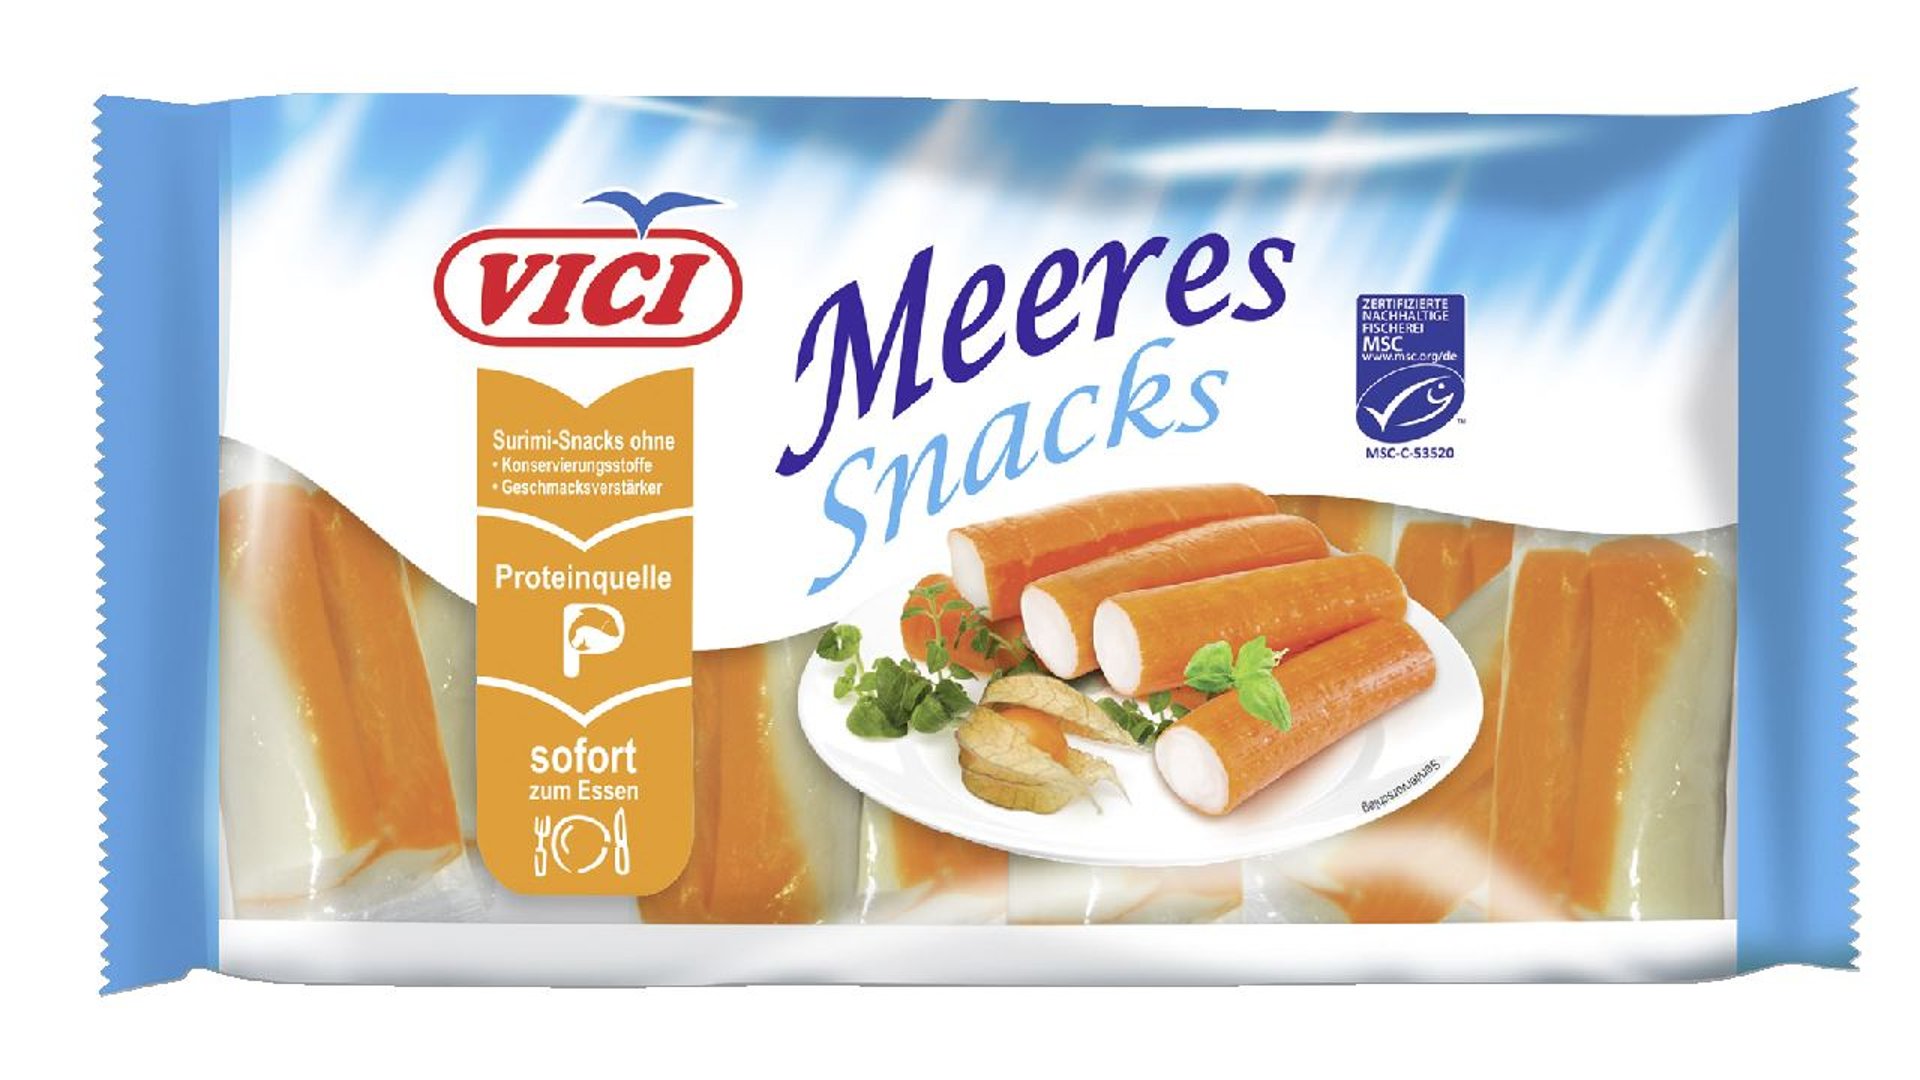 Vici - MSC Surimi-Sticks für Sushi - 1 x 450 g Packung